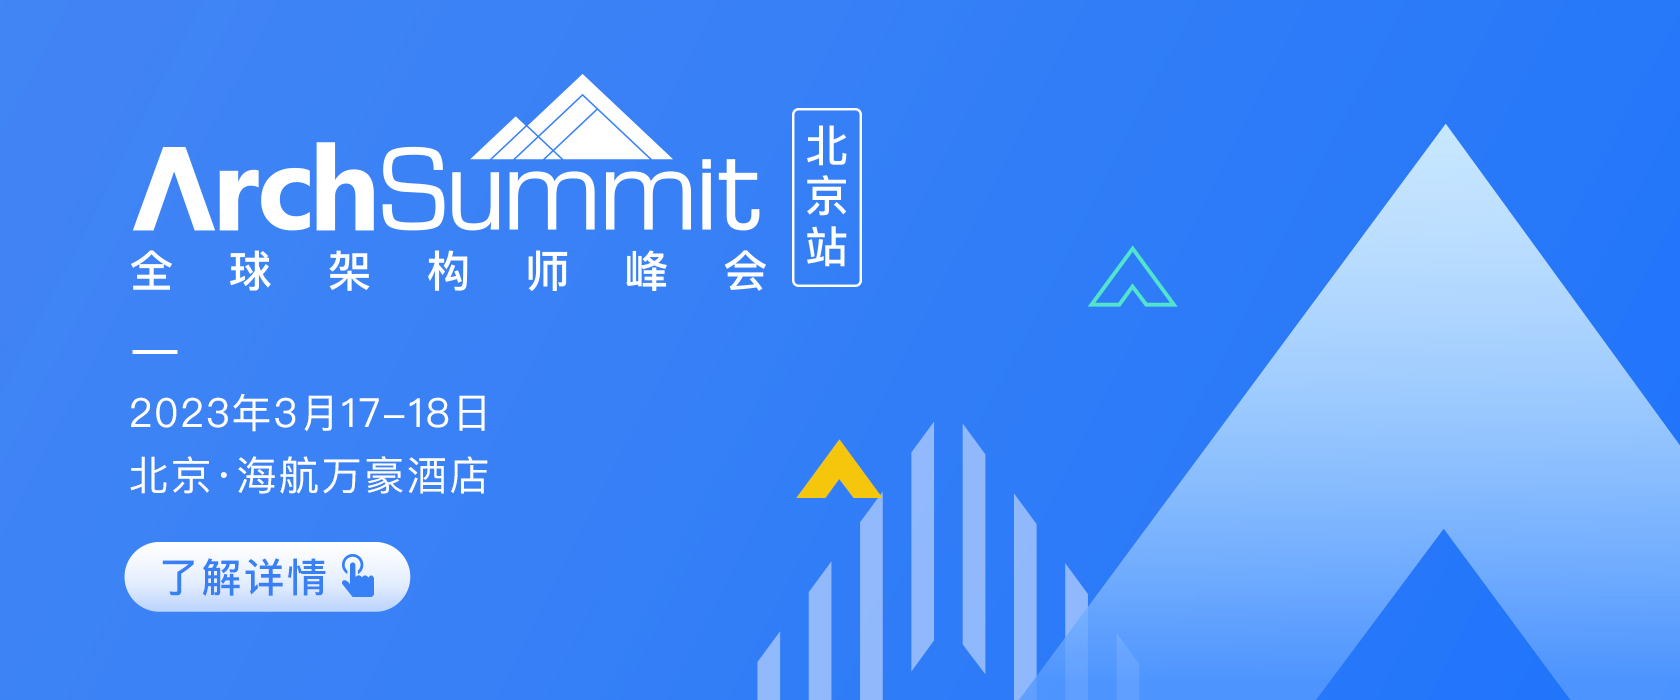 2023全球架构师峰会ArchSummit 北京